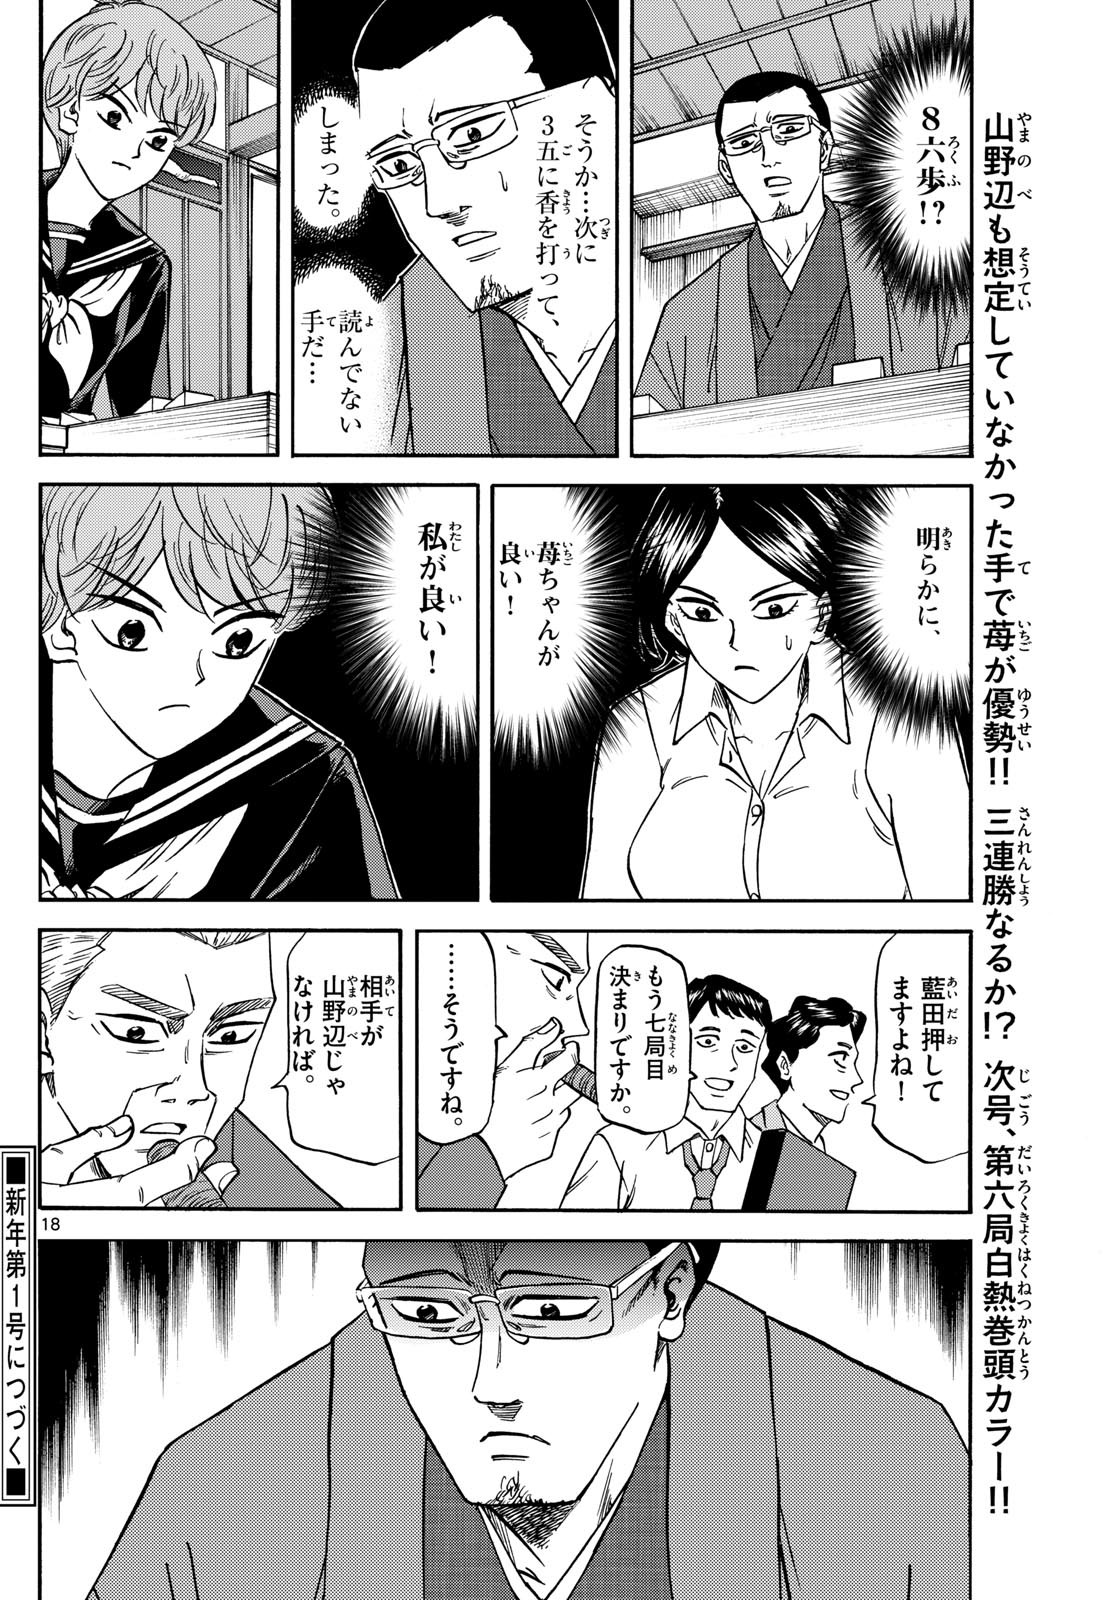 Ryu-to-Ichigo - Chapter 169 - Page 18